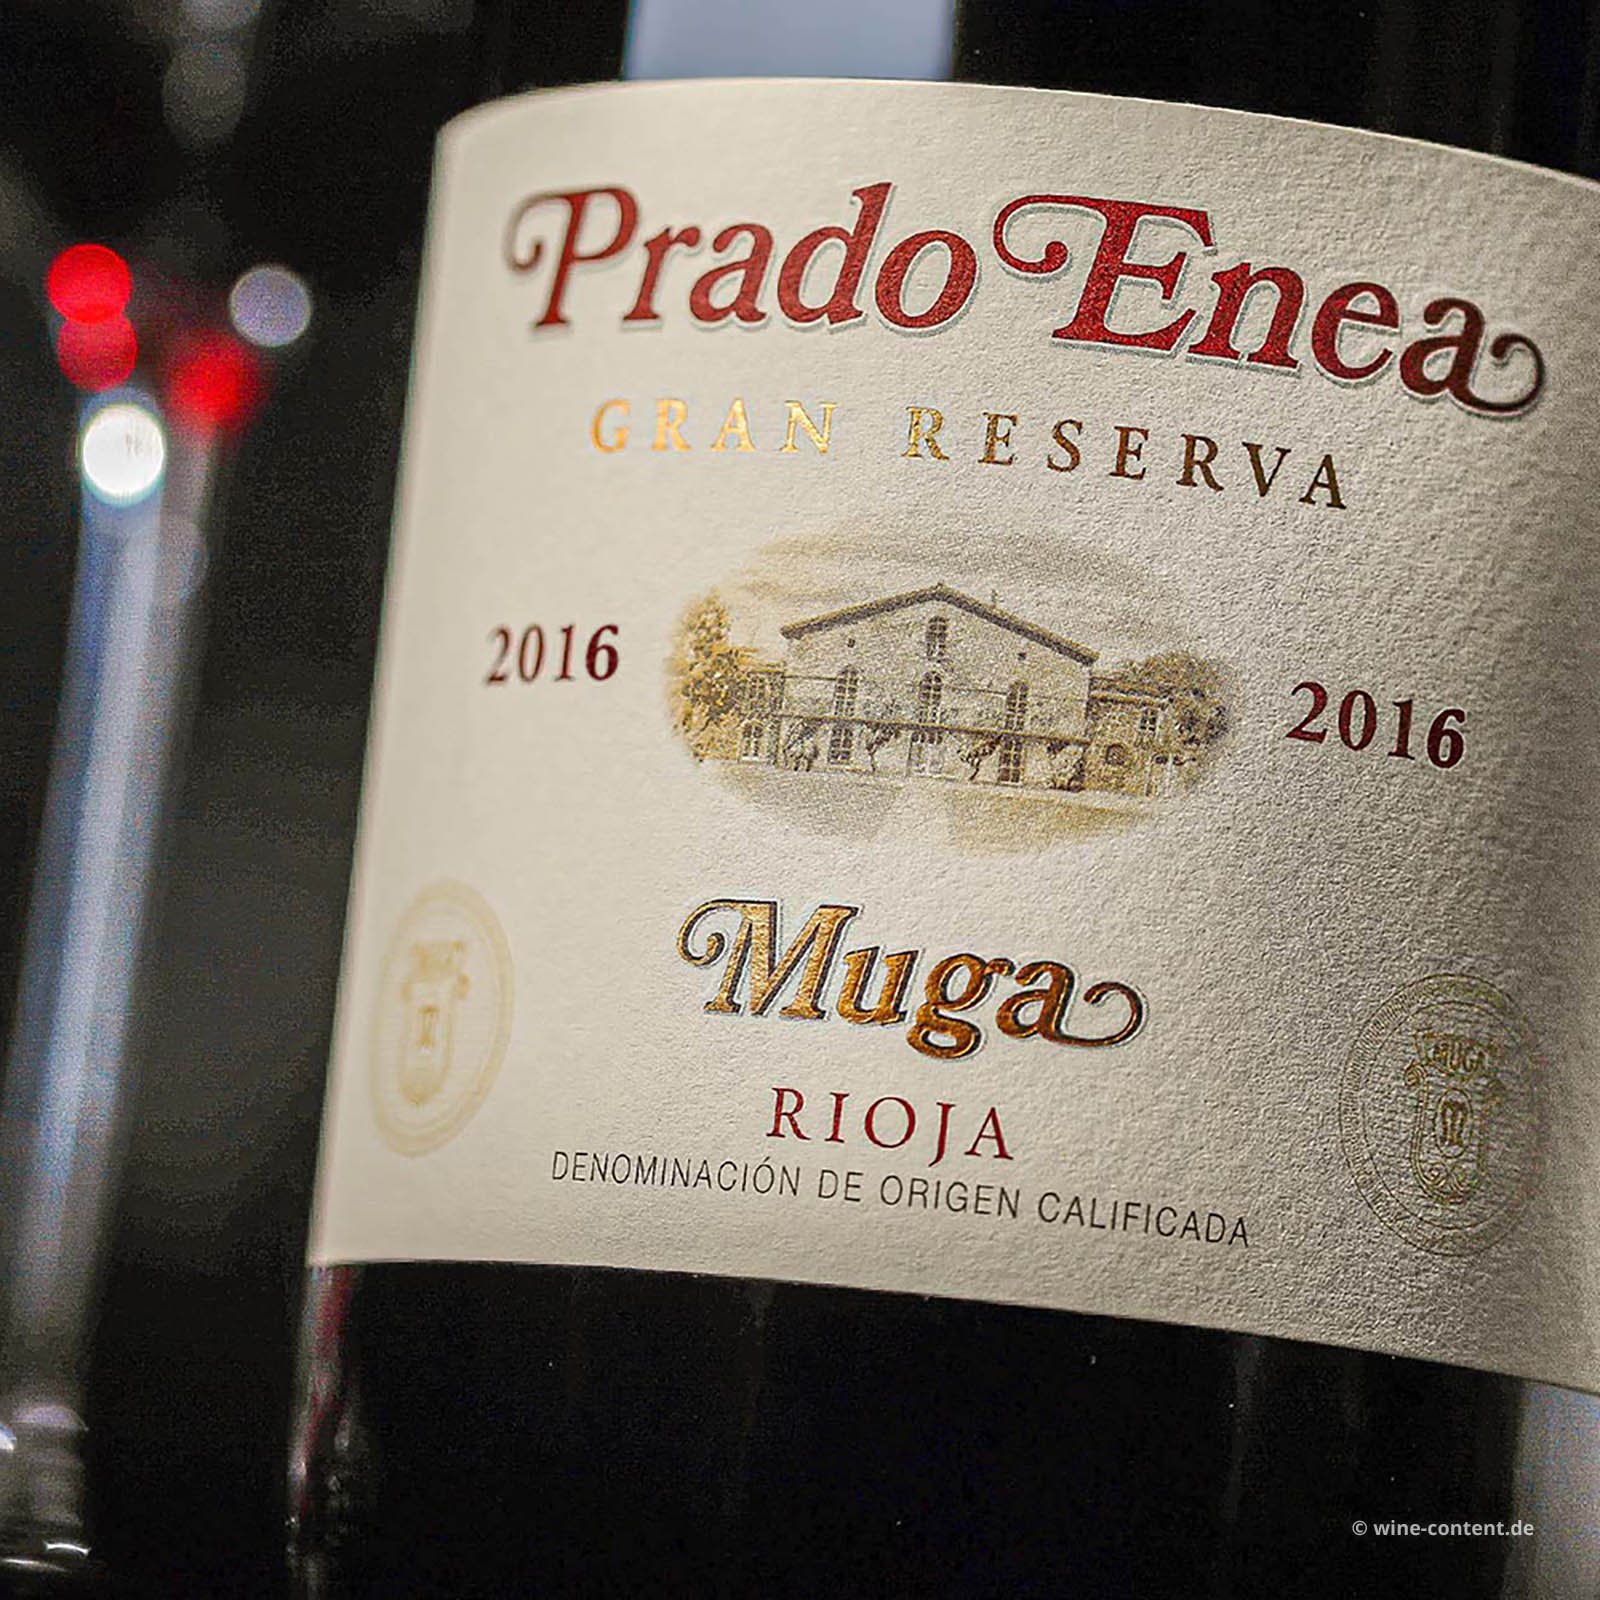 Rioja Gran Reserva 2016 Prado Enea